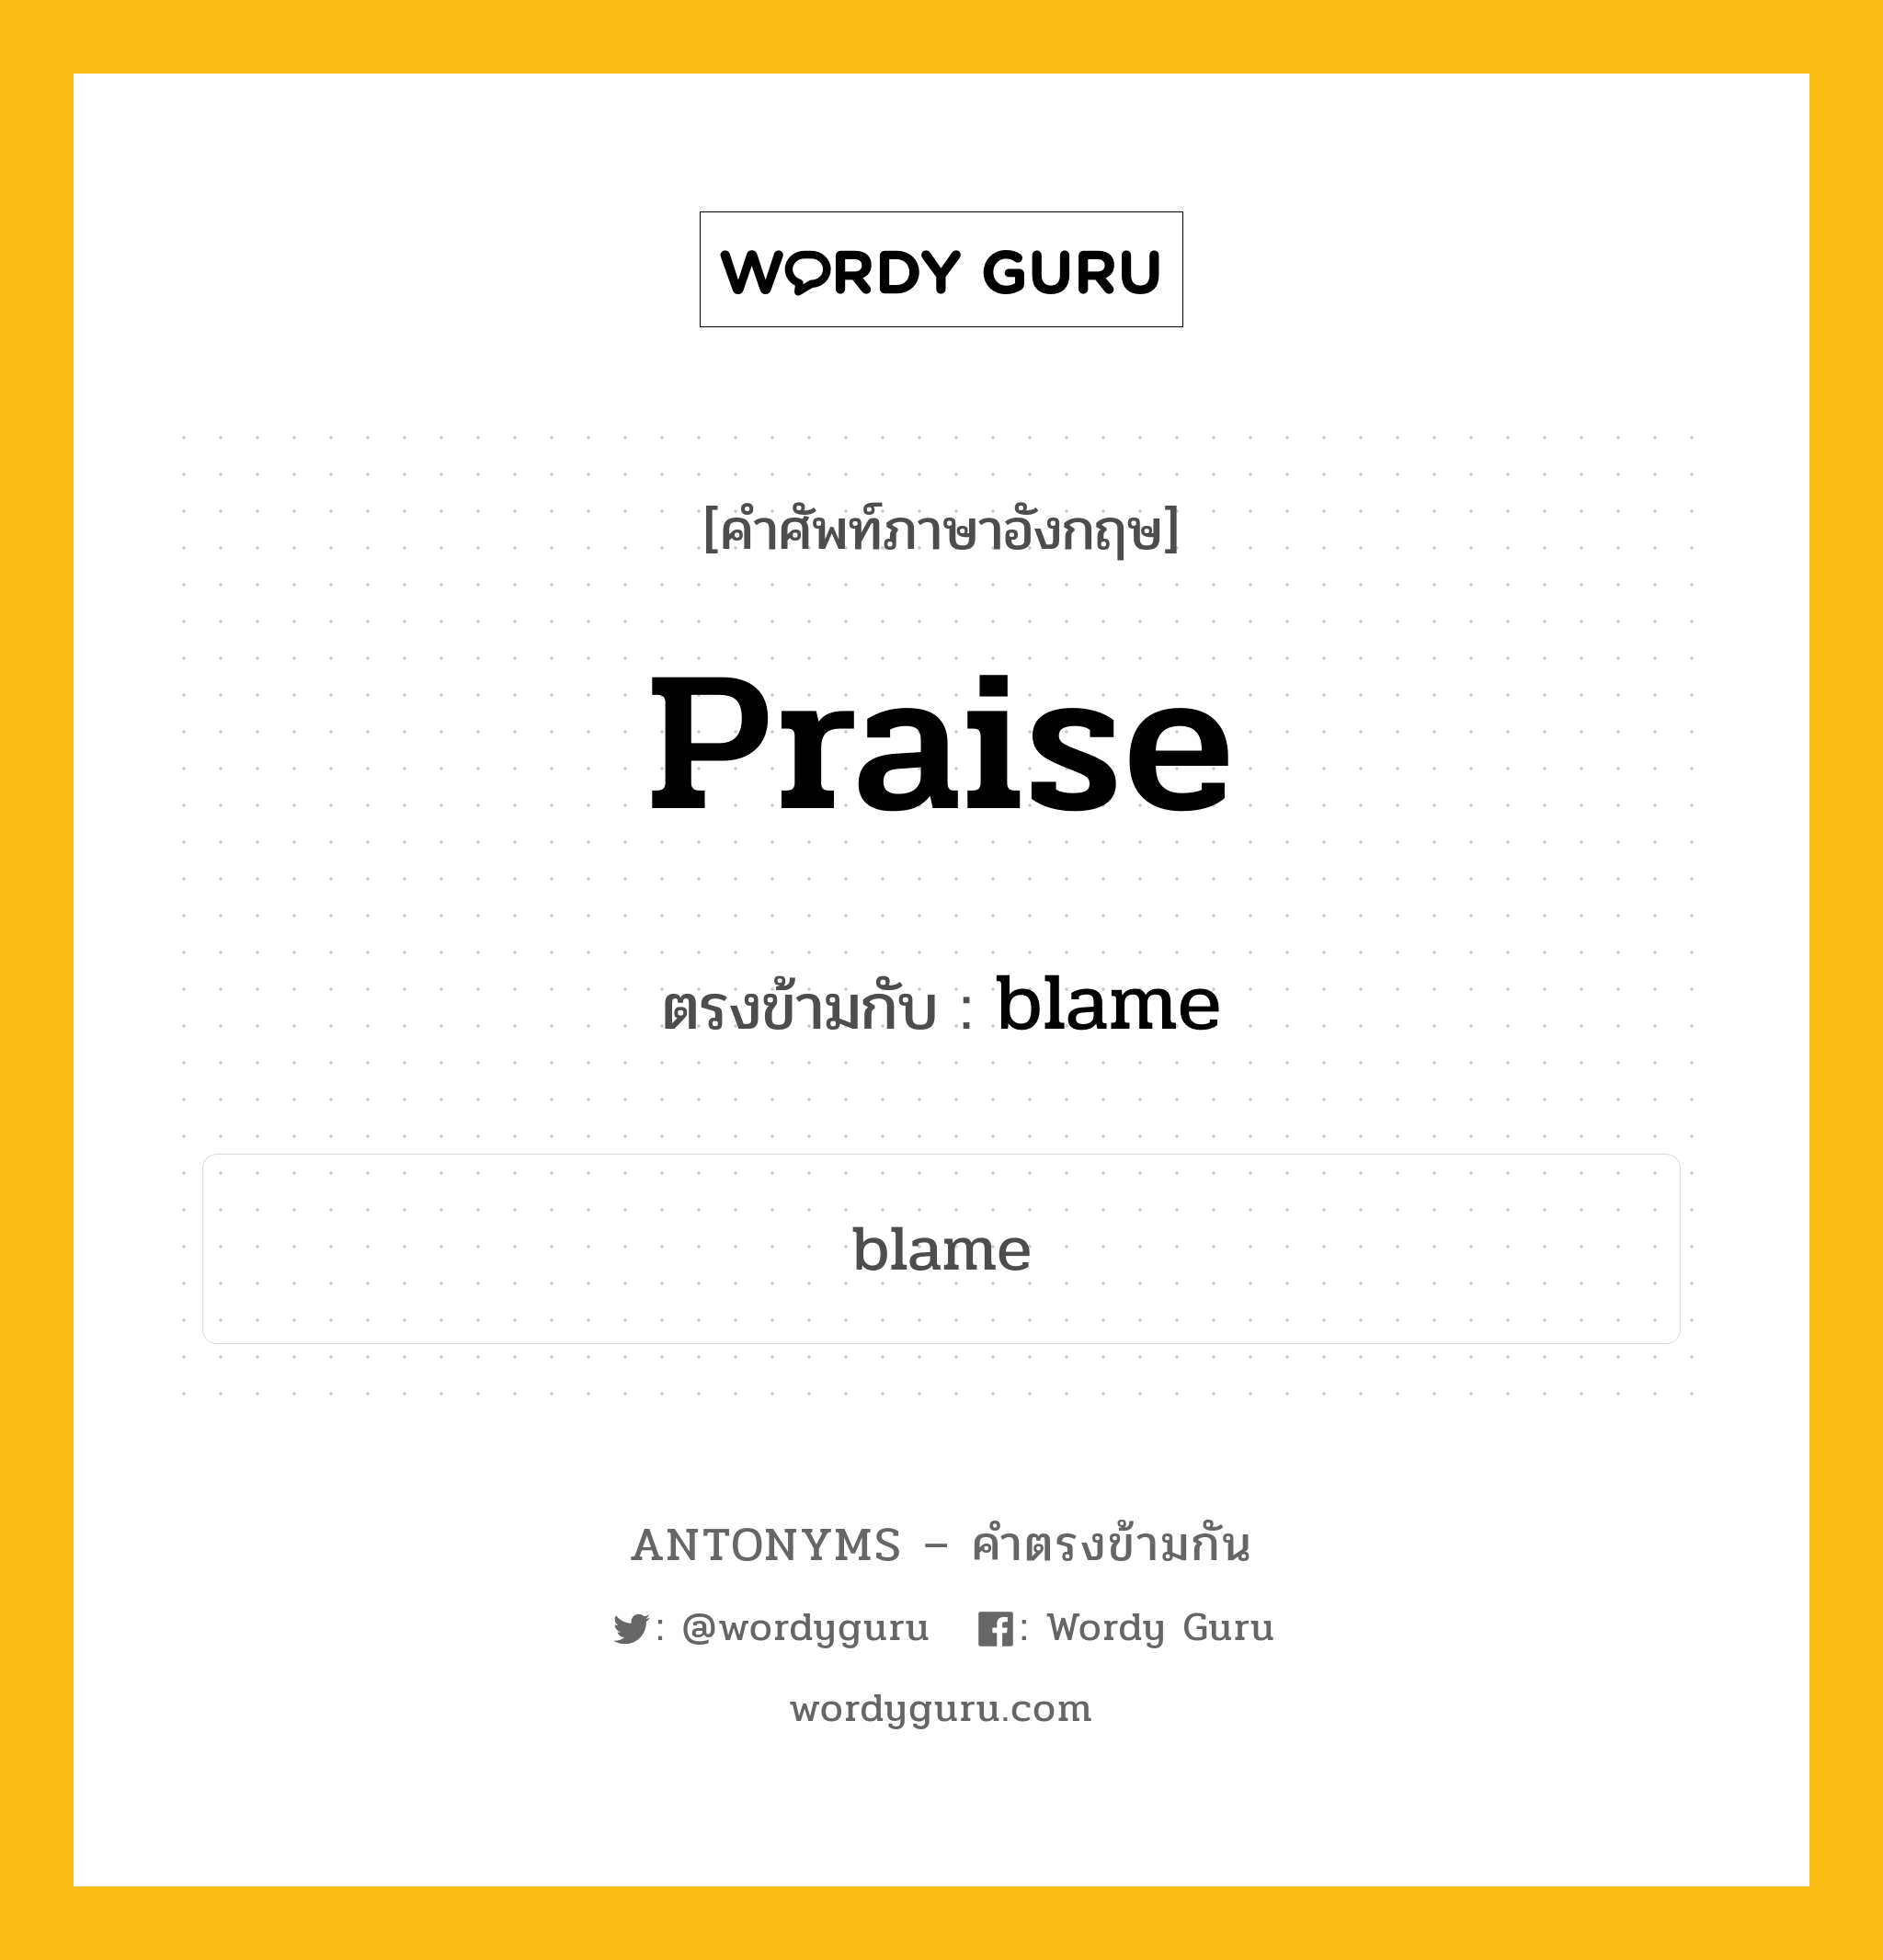 praise เป็นคำตรงข้ามกับคำไหนบ้าง?, คำศัพท์ภาษาอังกฤษ praise ตรงข้ามกับ blame หมวด blame